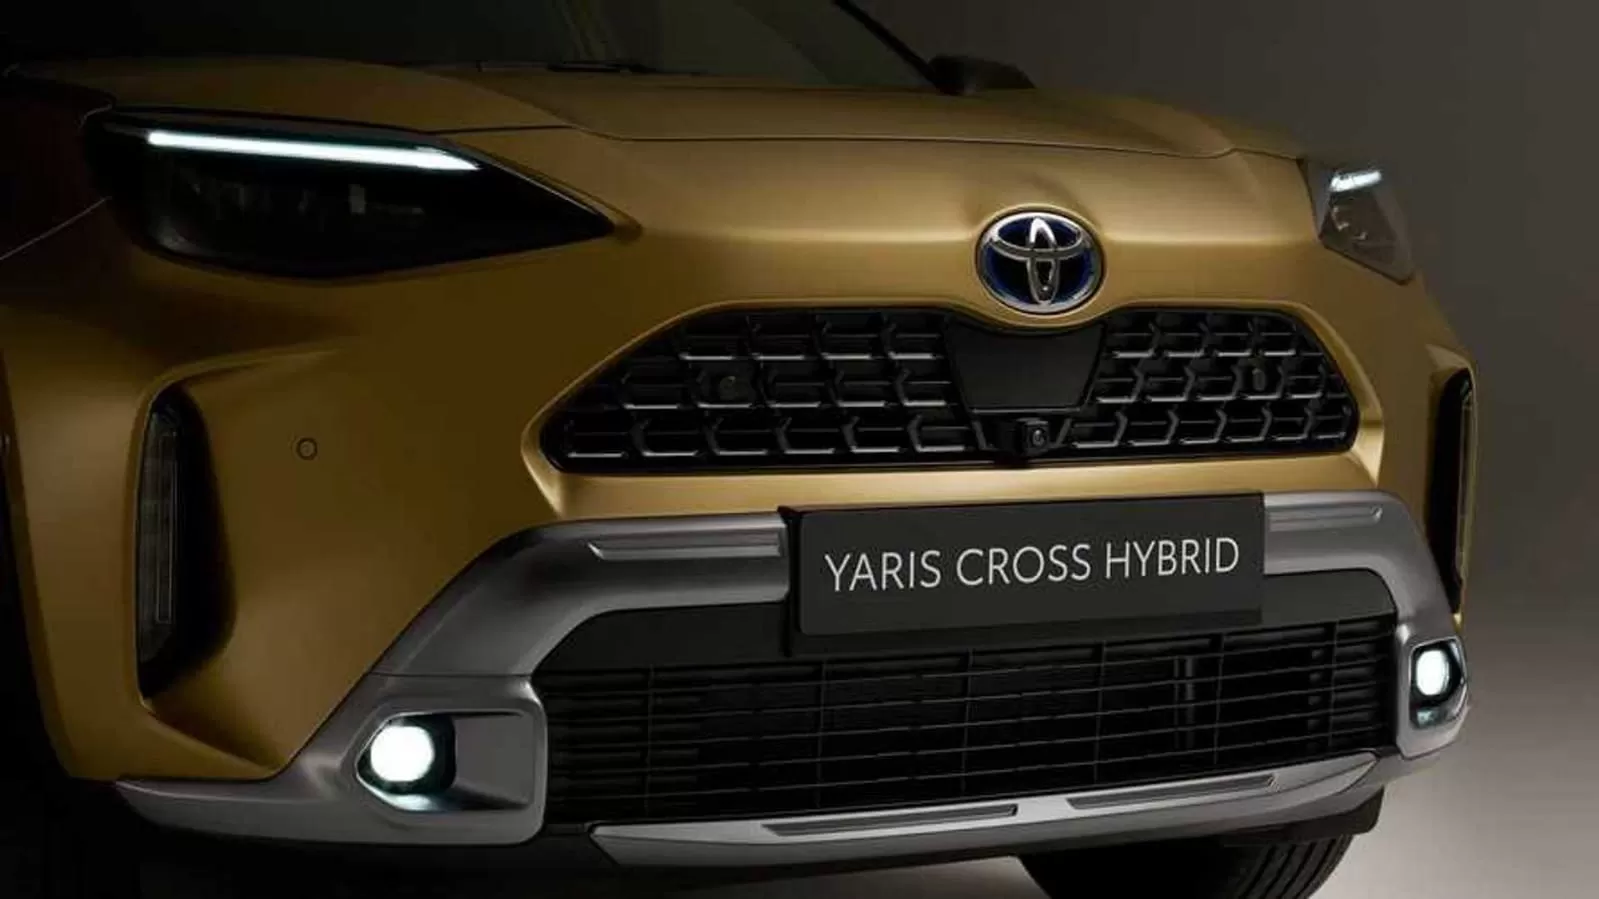 Dikenal Sebagai Mobil yang Ramah dengan Lingkungan, Inilah Fitur dari Mobil Toyota Yaris Cross Hybrid